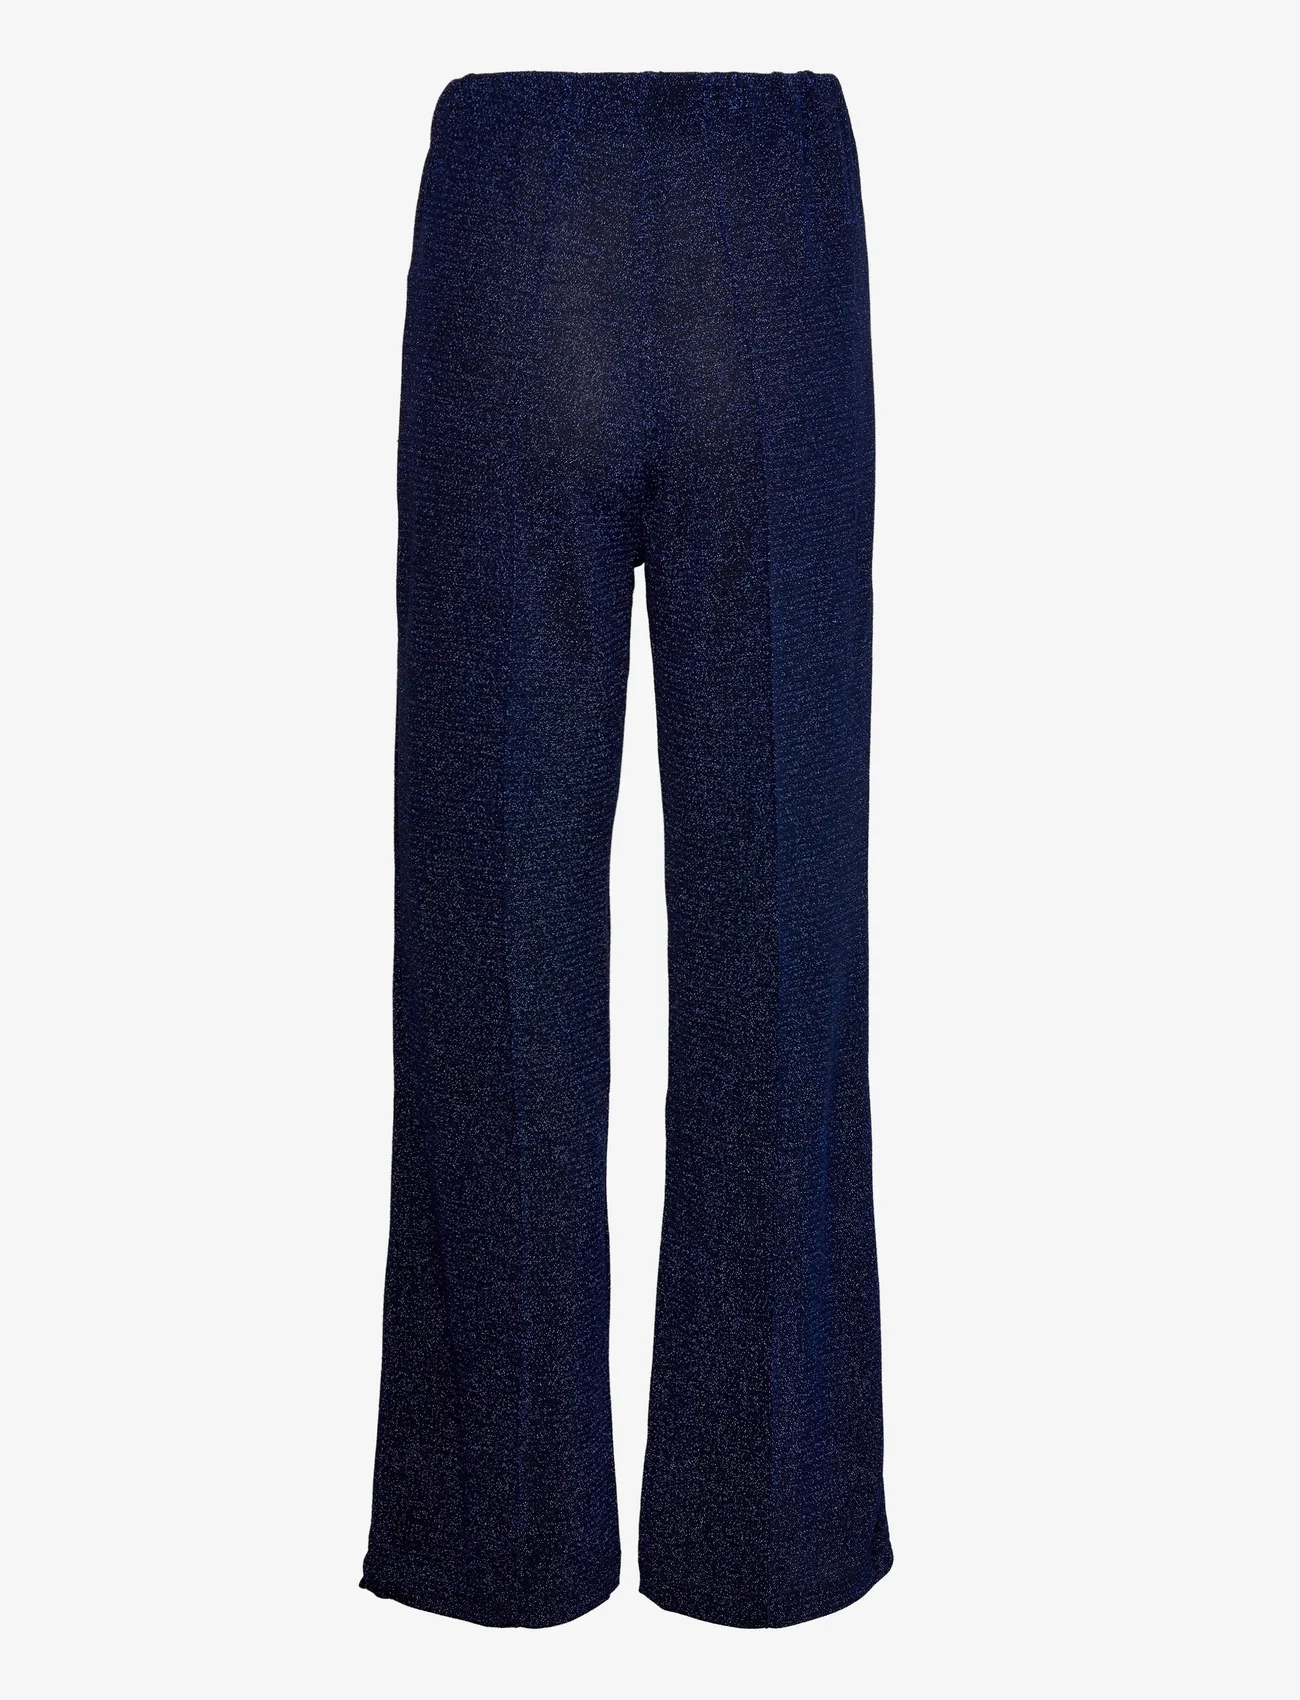 Lollys Laundry - Chile Pants - leveälahkeiset housut - dark blue - 1